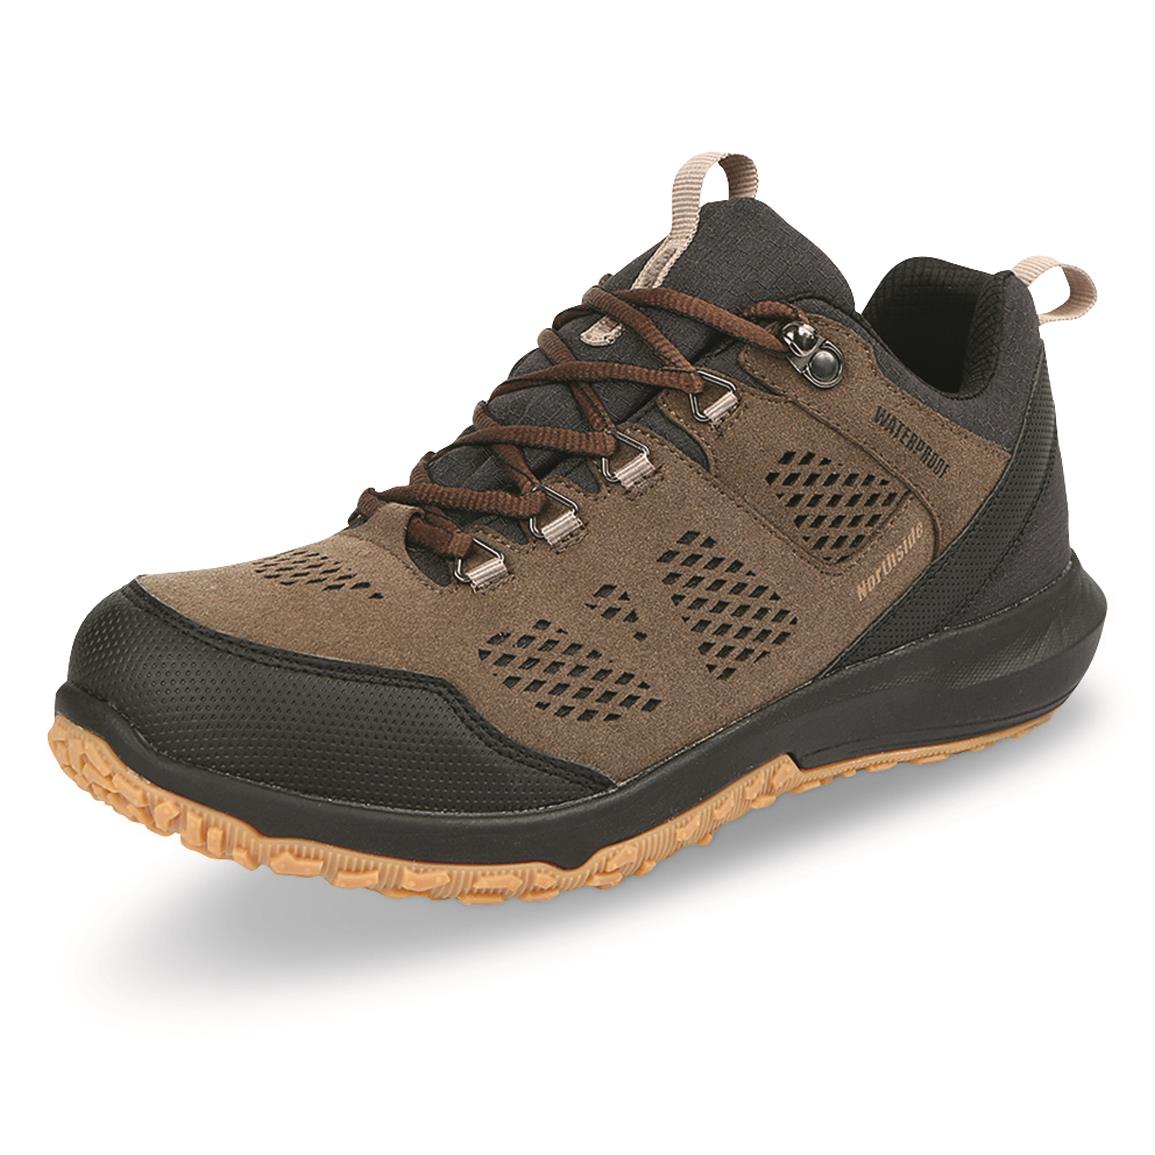 Northside Men's Benton Waterproof Hiking Shoes, Brown/black